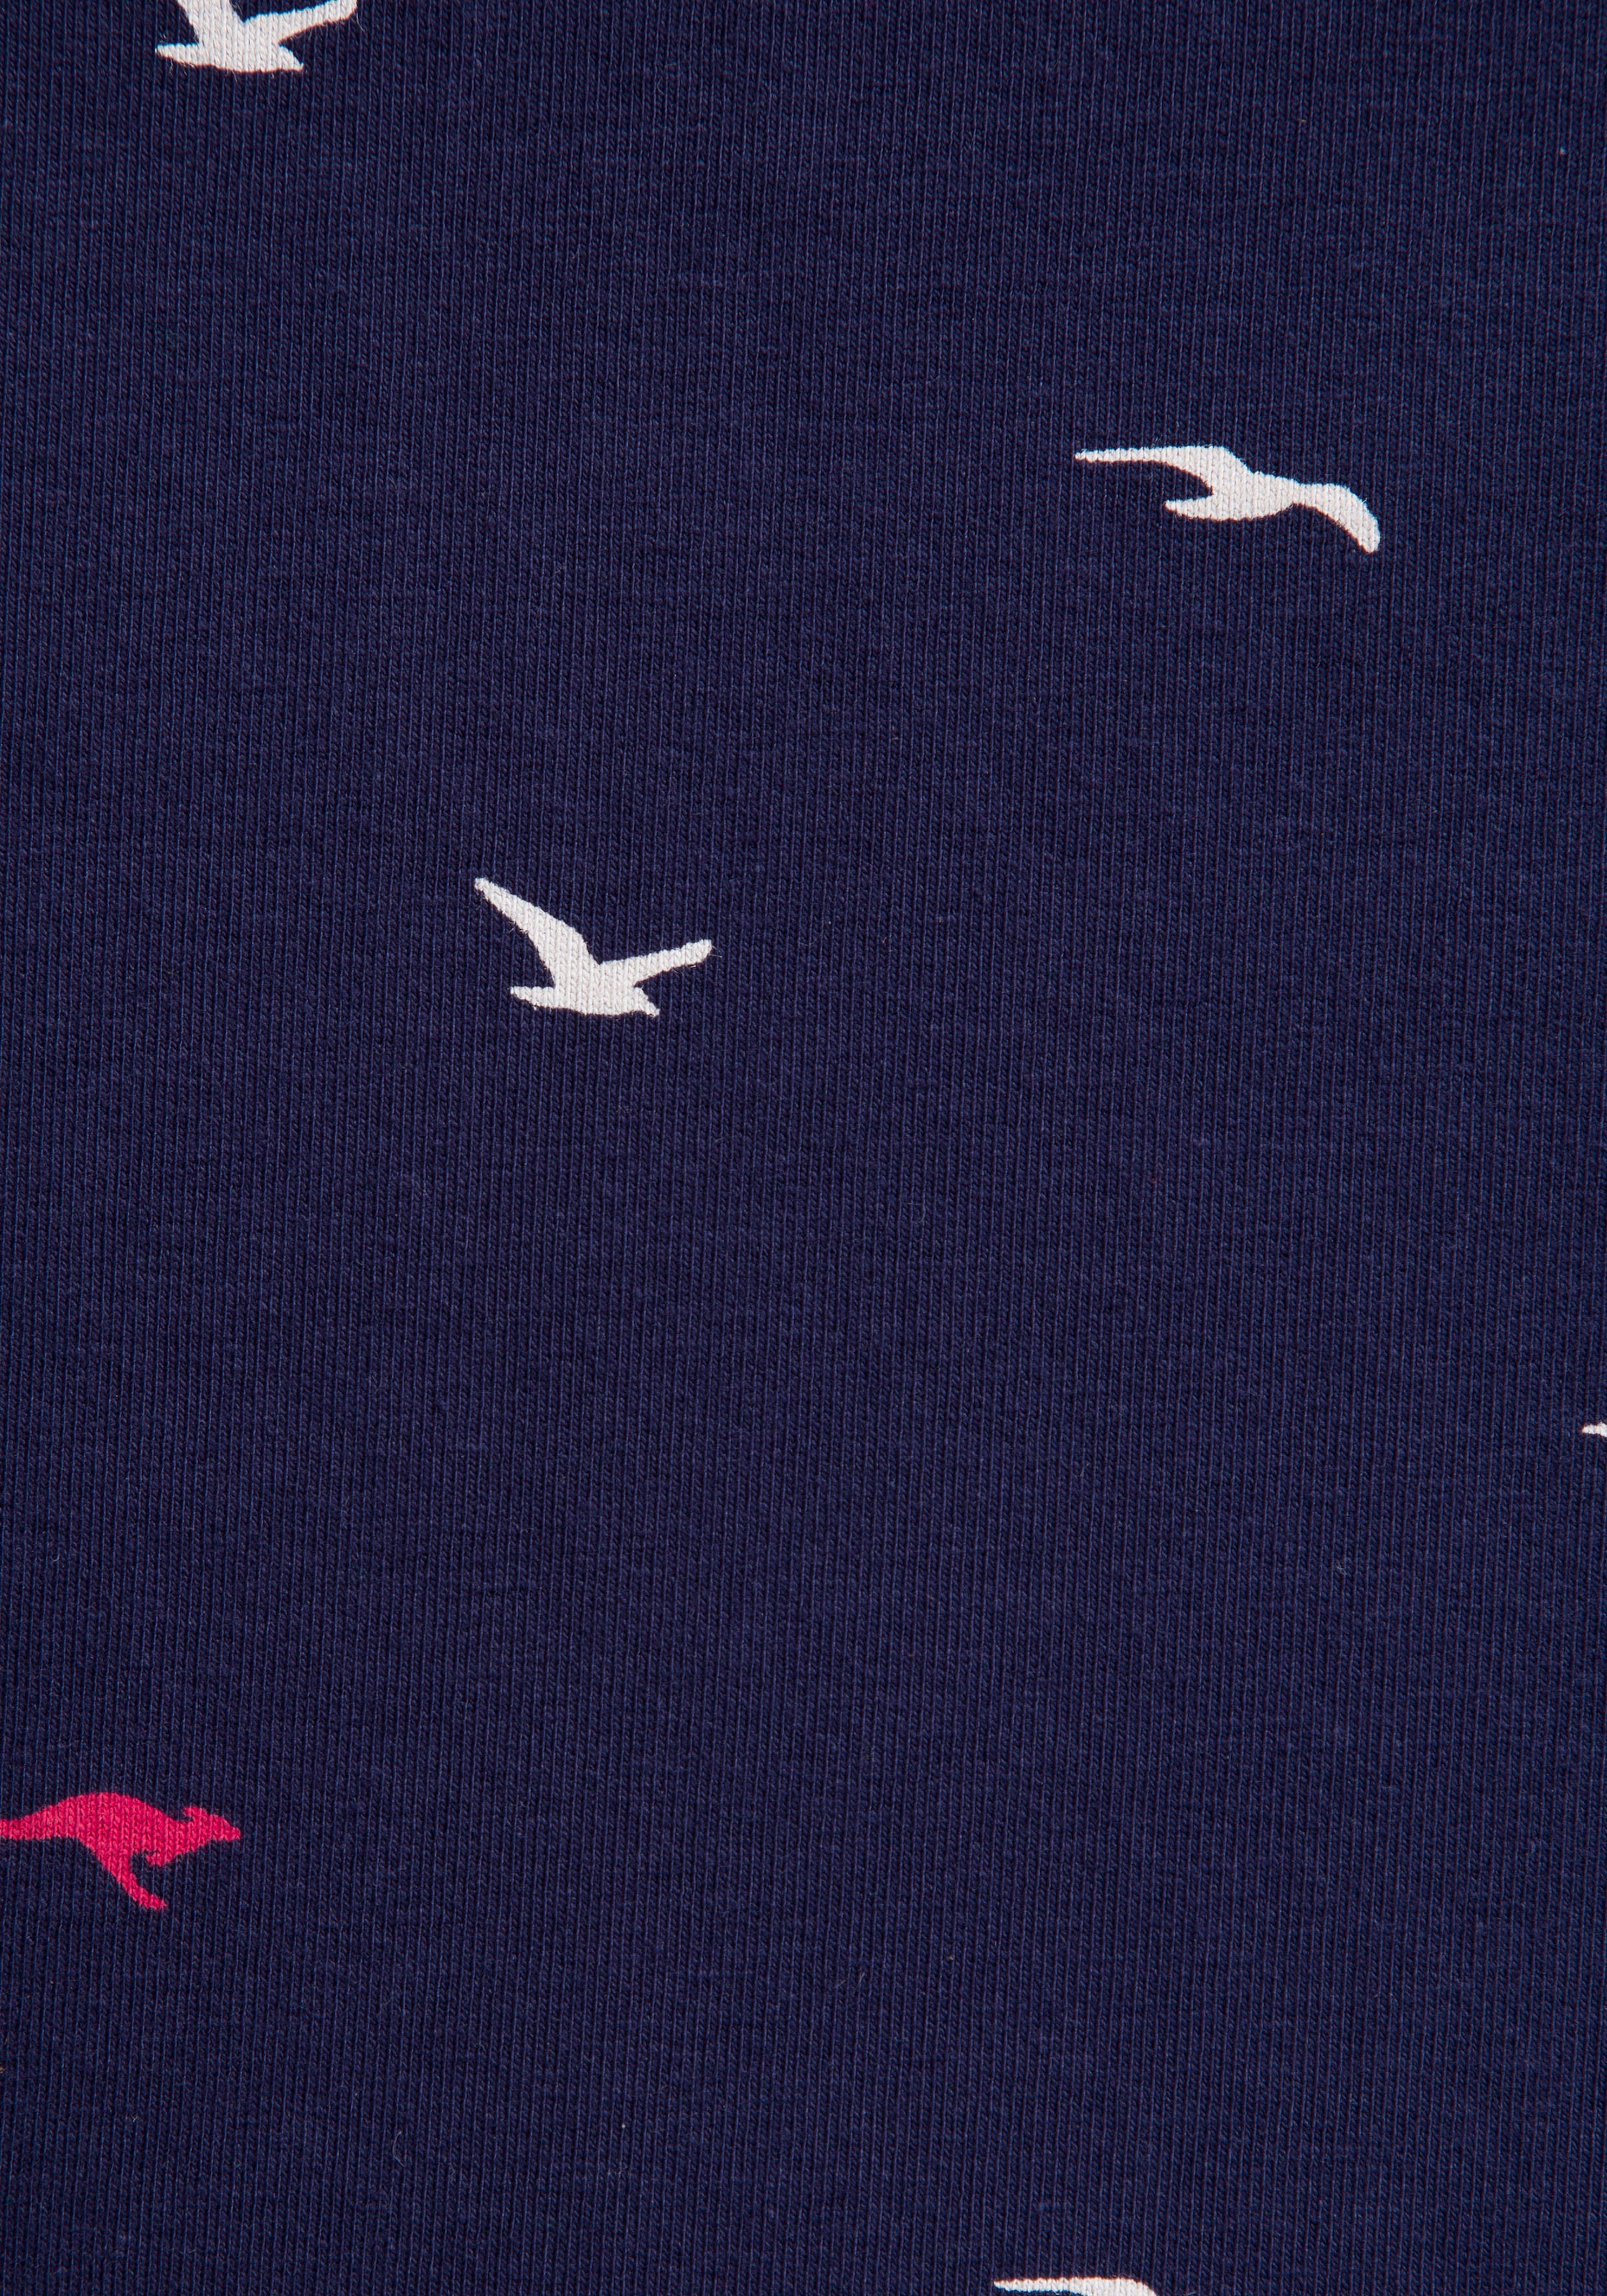 KangaROOS Minirock, mit Minimal-Print von Vögeln oder süßen Herzen